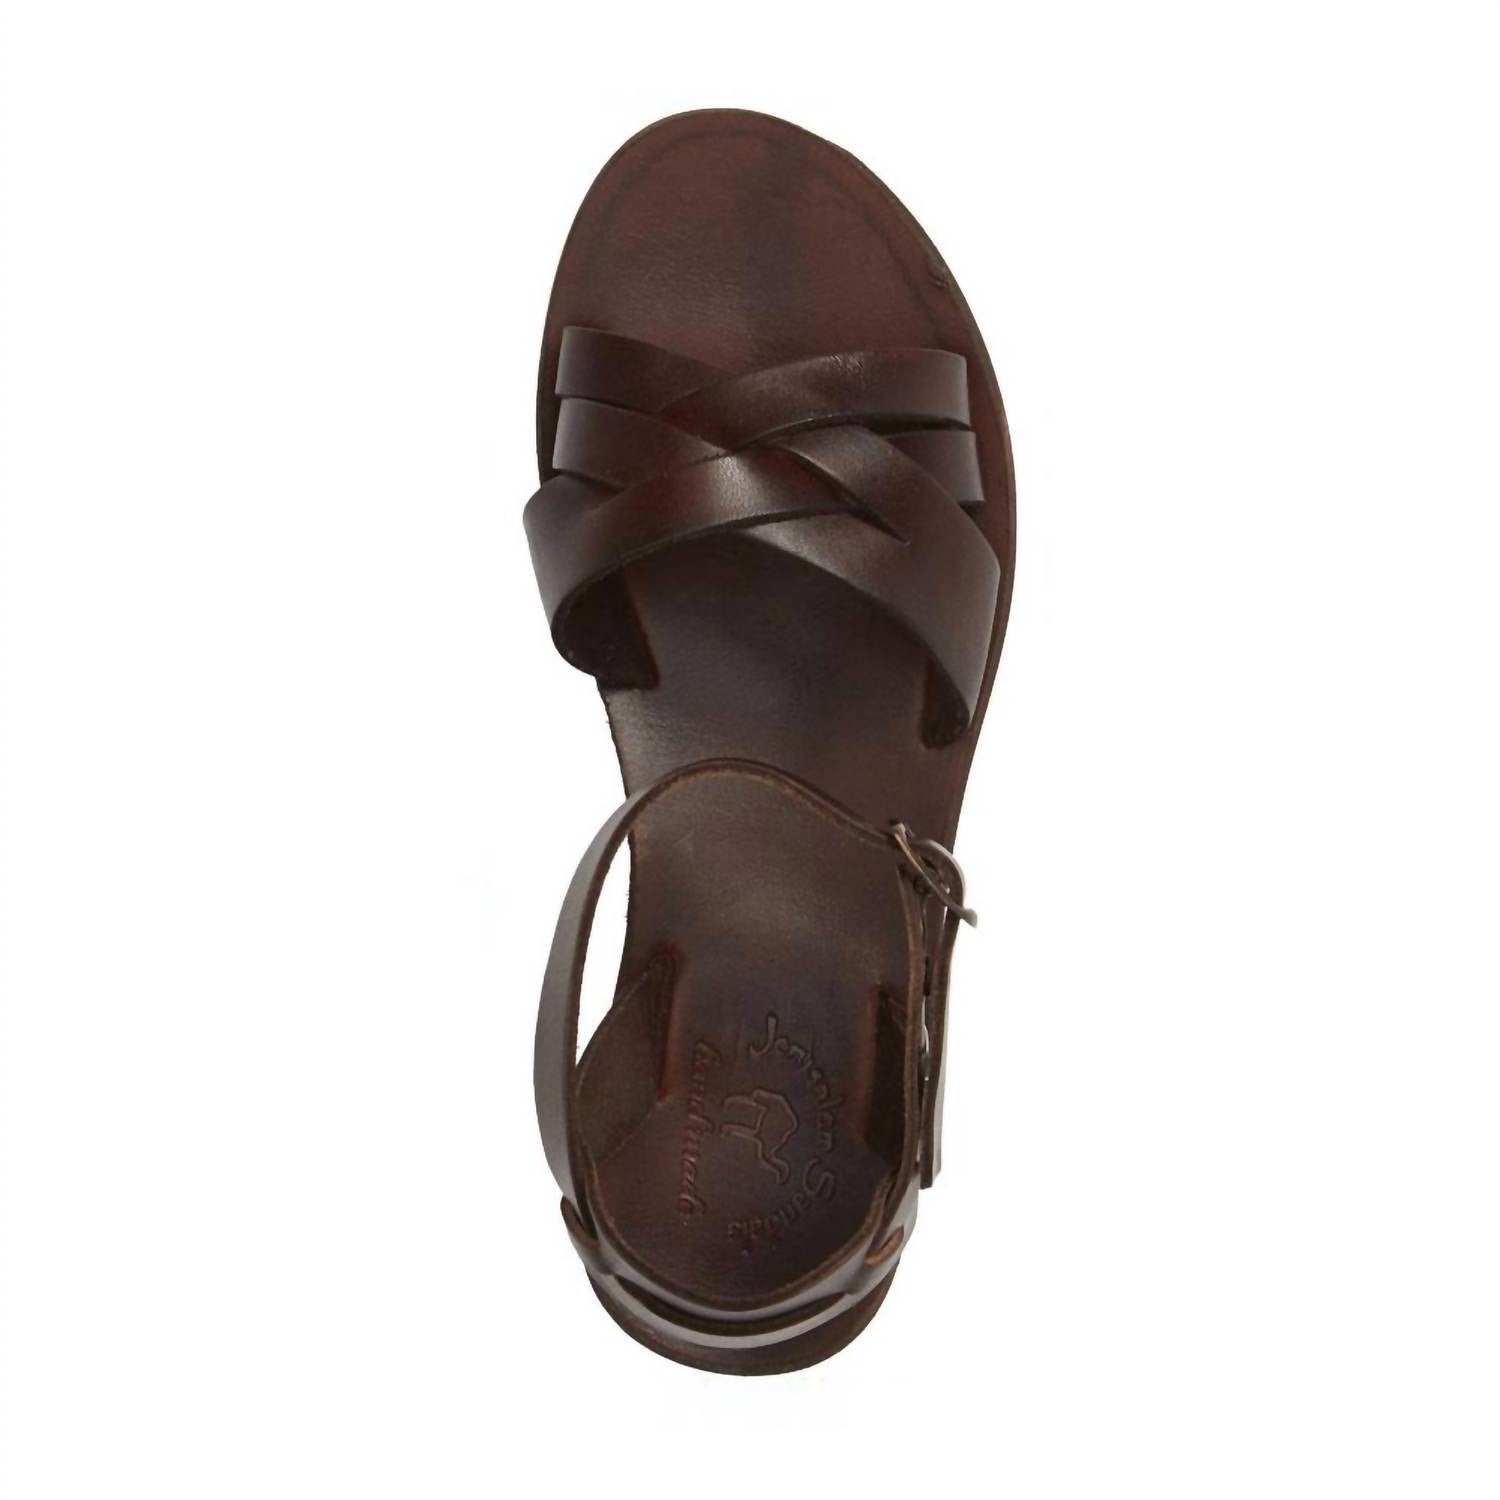 Jerusalem Sandals - Women's Chloe Leather Adjustable Sandal